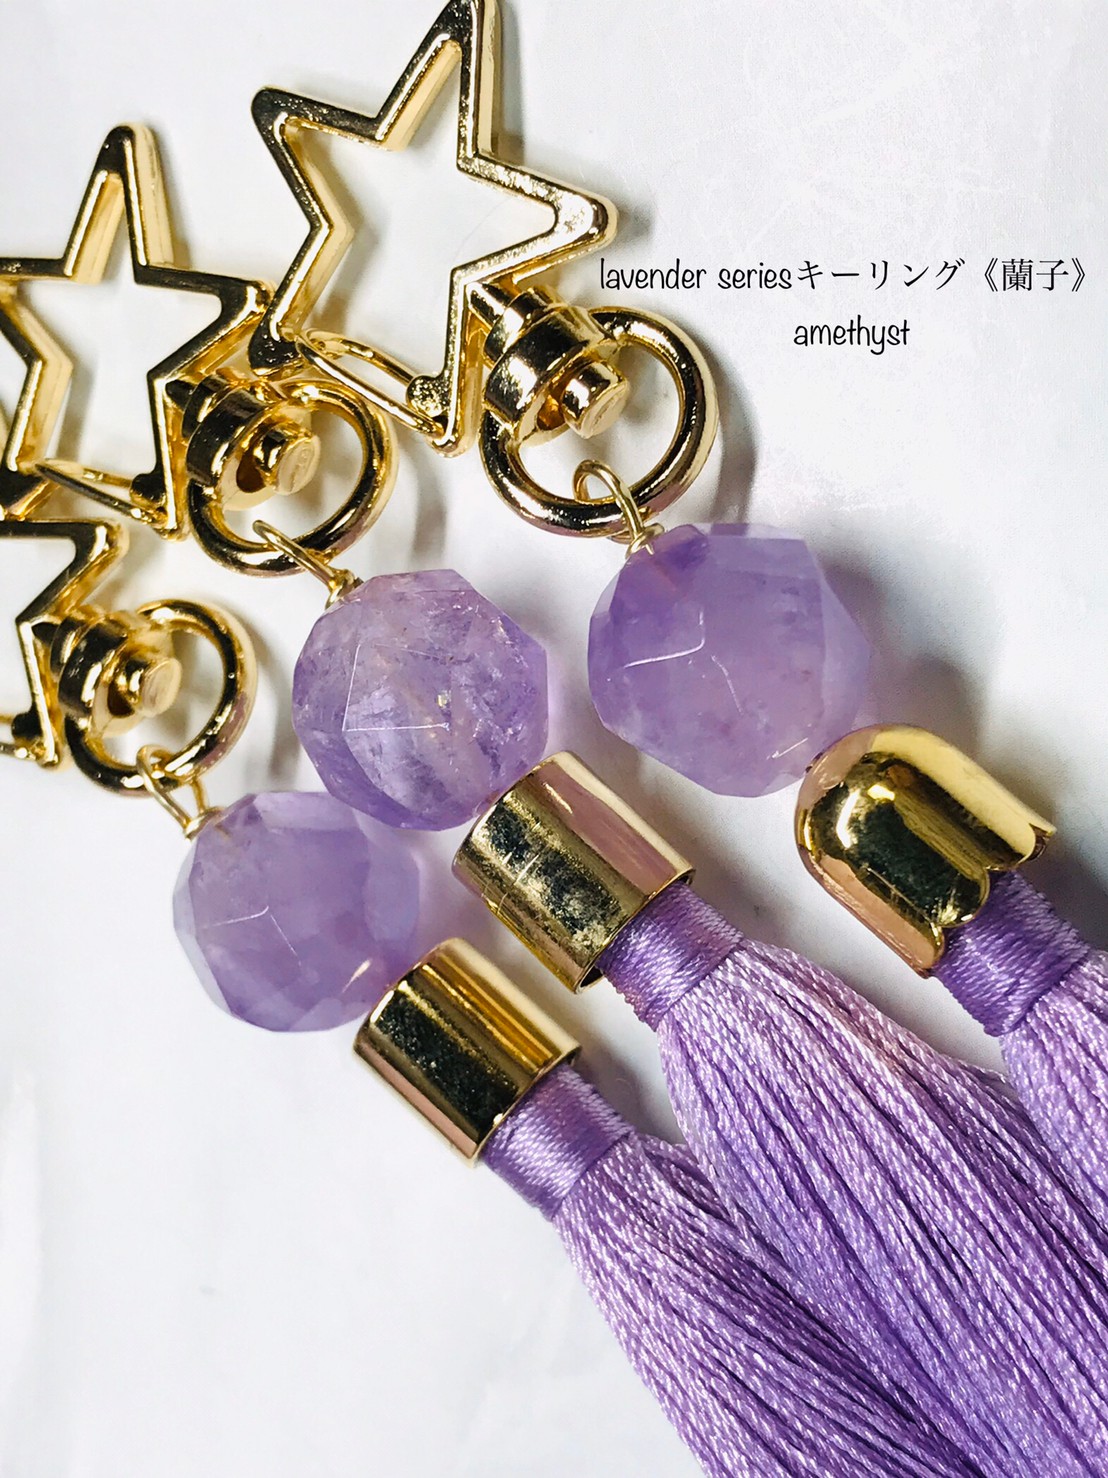 新商品「lavender series⭐キーリング《蘭子》」を掲載致しました!!!!!